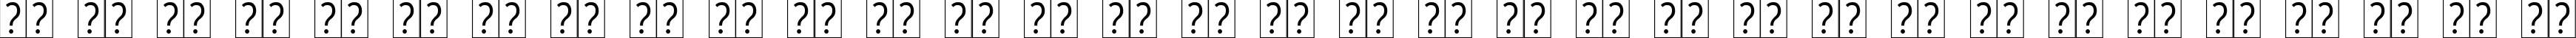 Пример написания русского алфавита шрифтом Euphemia